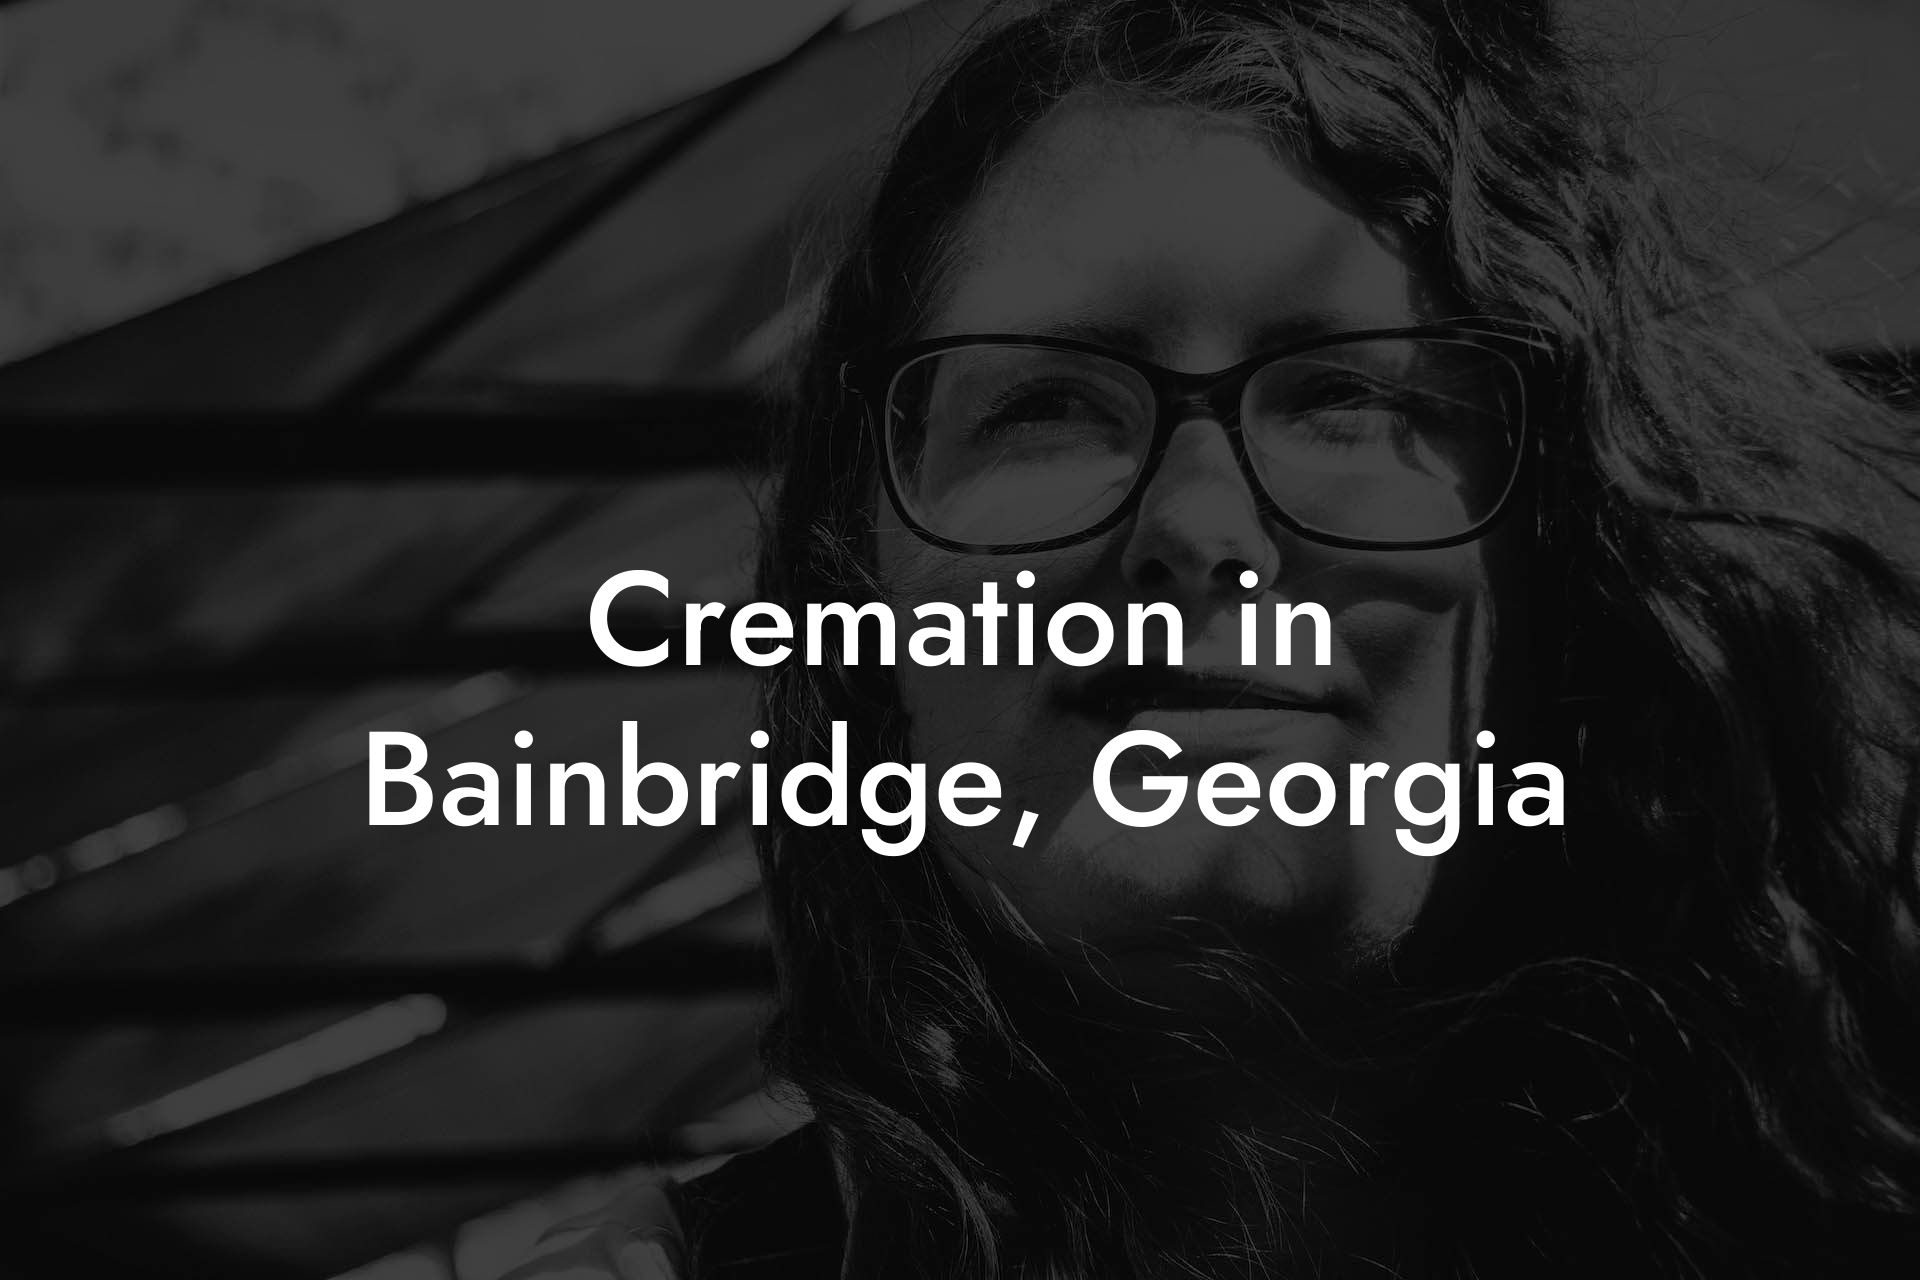 Cremation in Bainbridge, Georgia